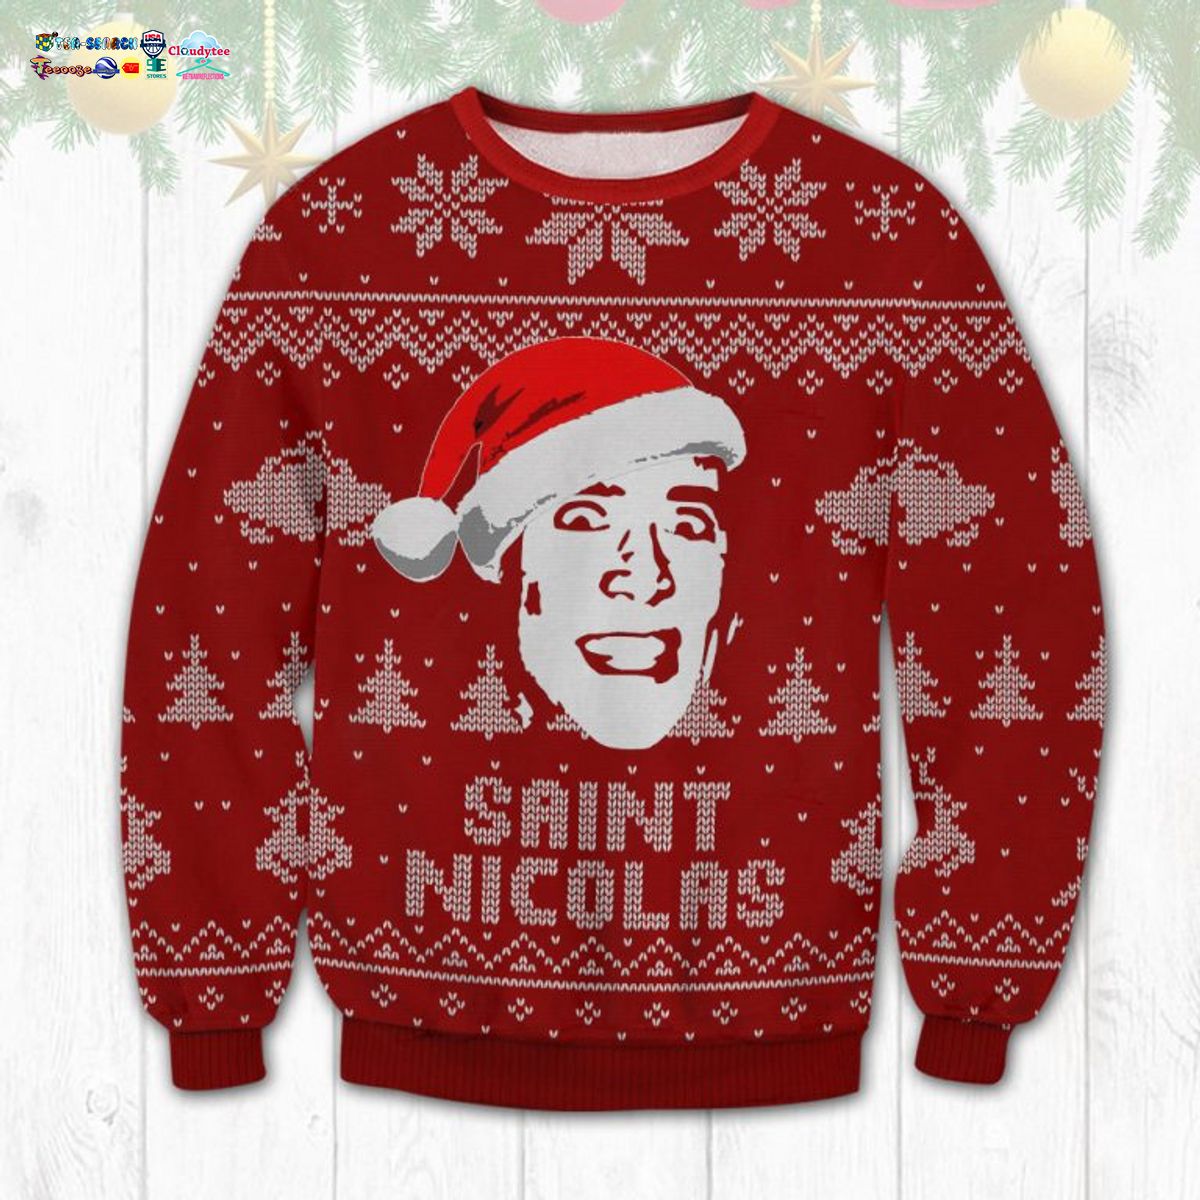 Nicolas Cage Saint Nicolas Ugly Christmas Sweater